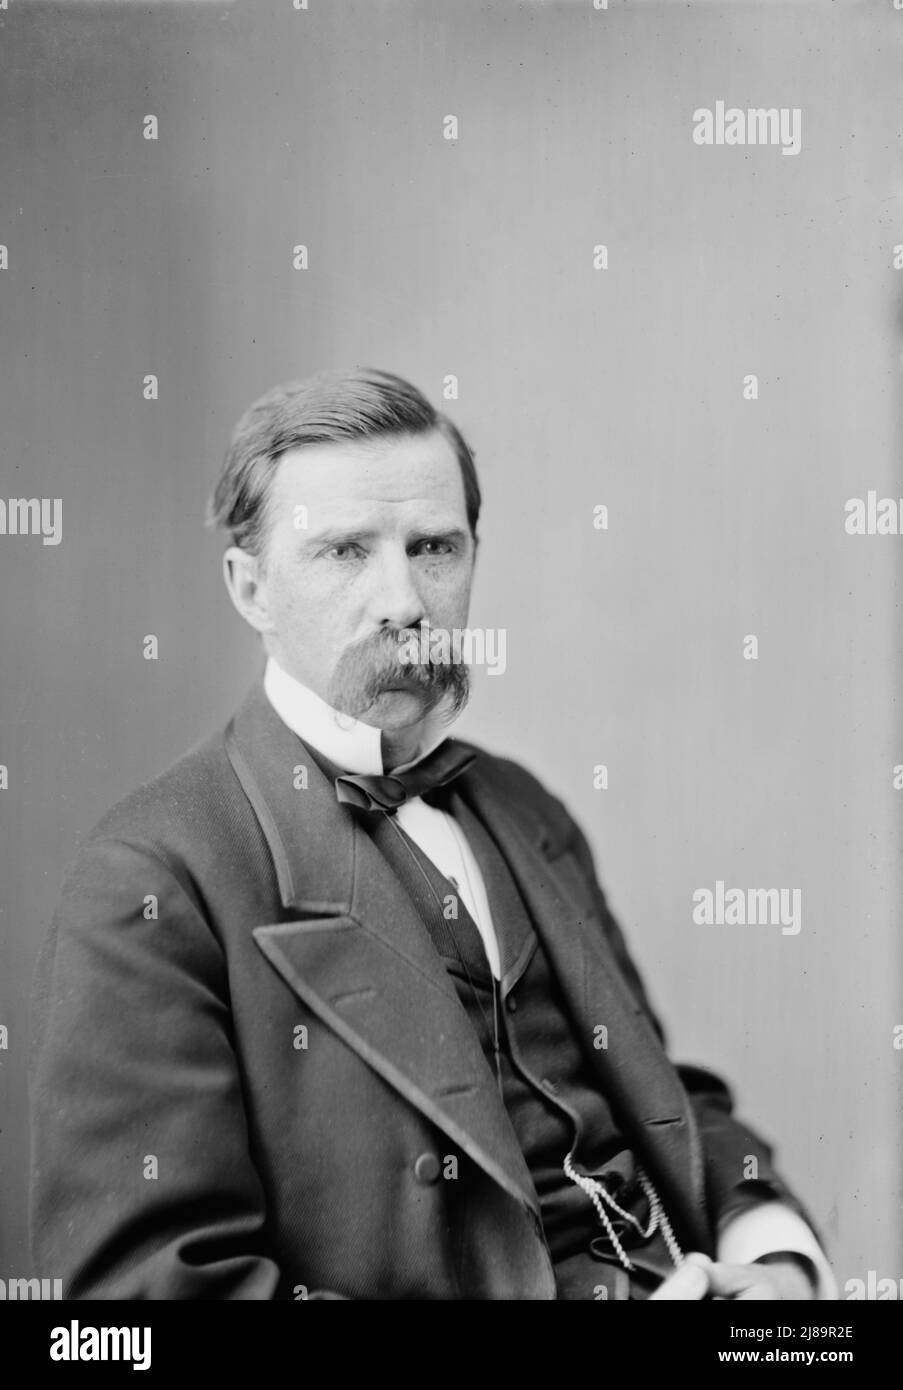 Cameron, Senator James Donald of PA, between 1870 and 1880. Stock Photo